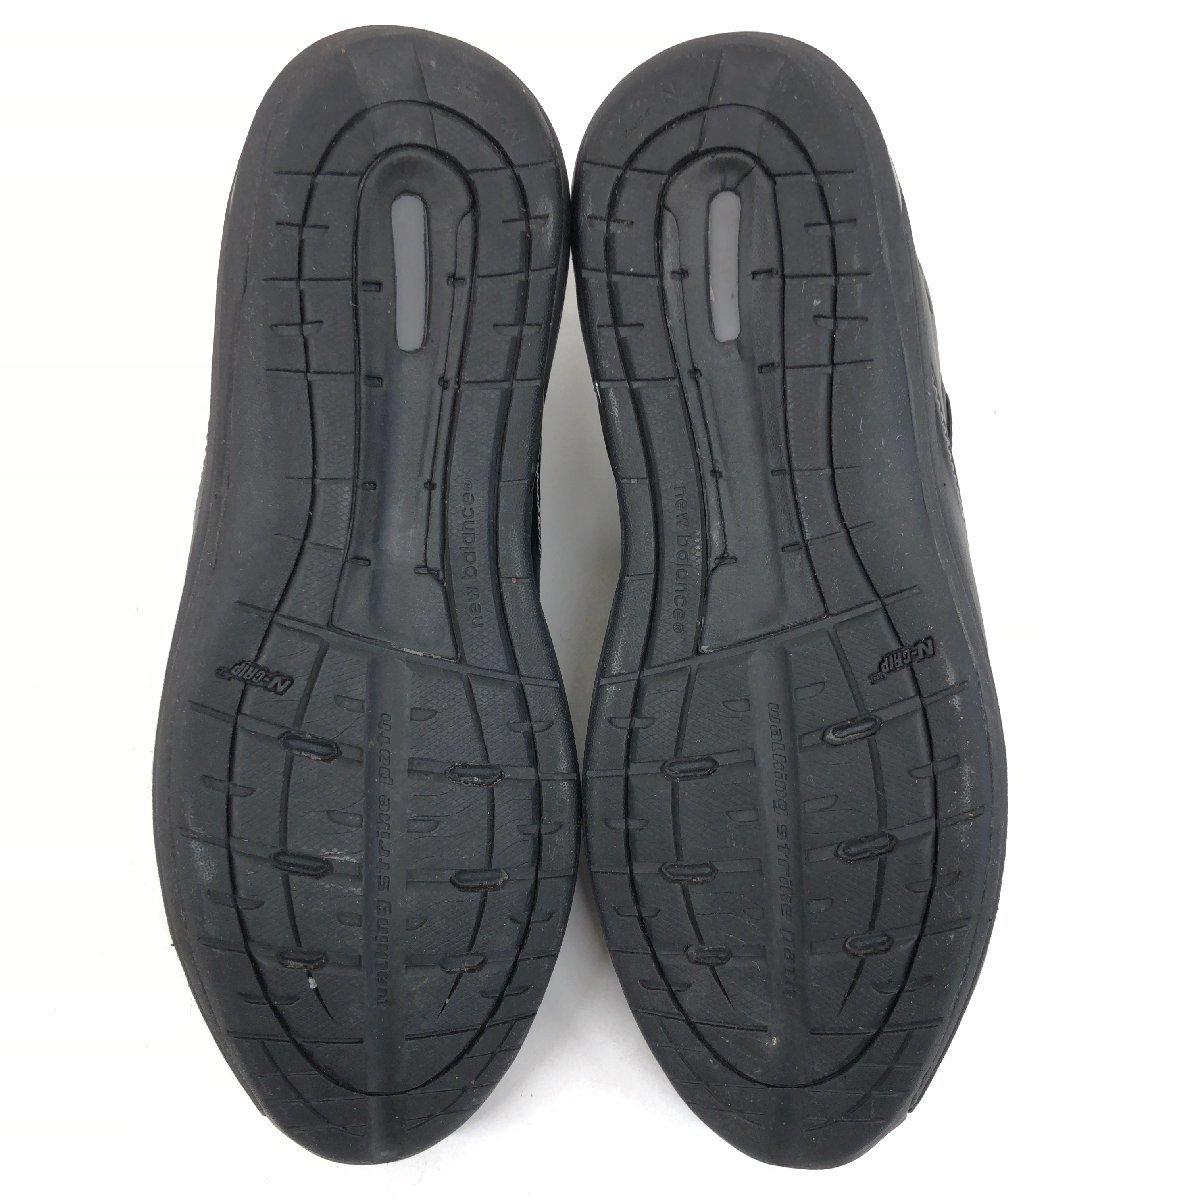 ●New Balance ニューバランス WW861 サイドジップ エコレザー ウォーキングシューズ 24cm 黒 ブラック スニーカー コンフォート 健康靴_画像8